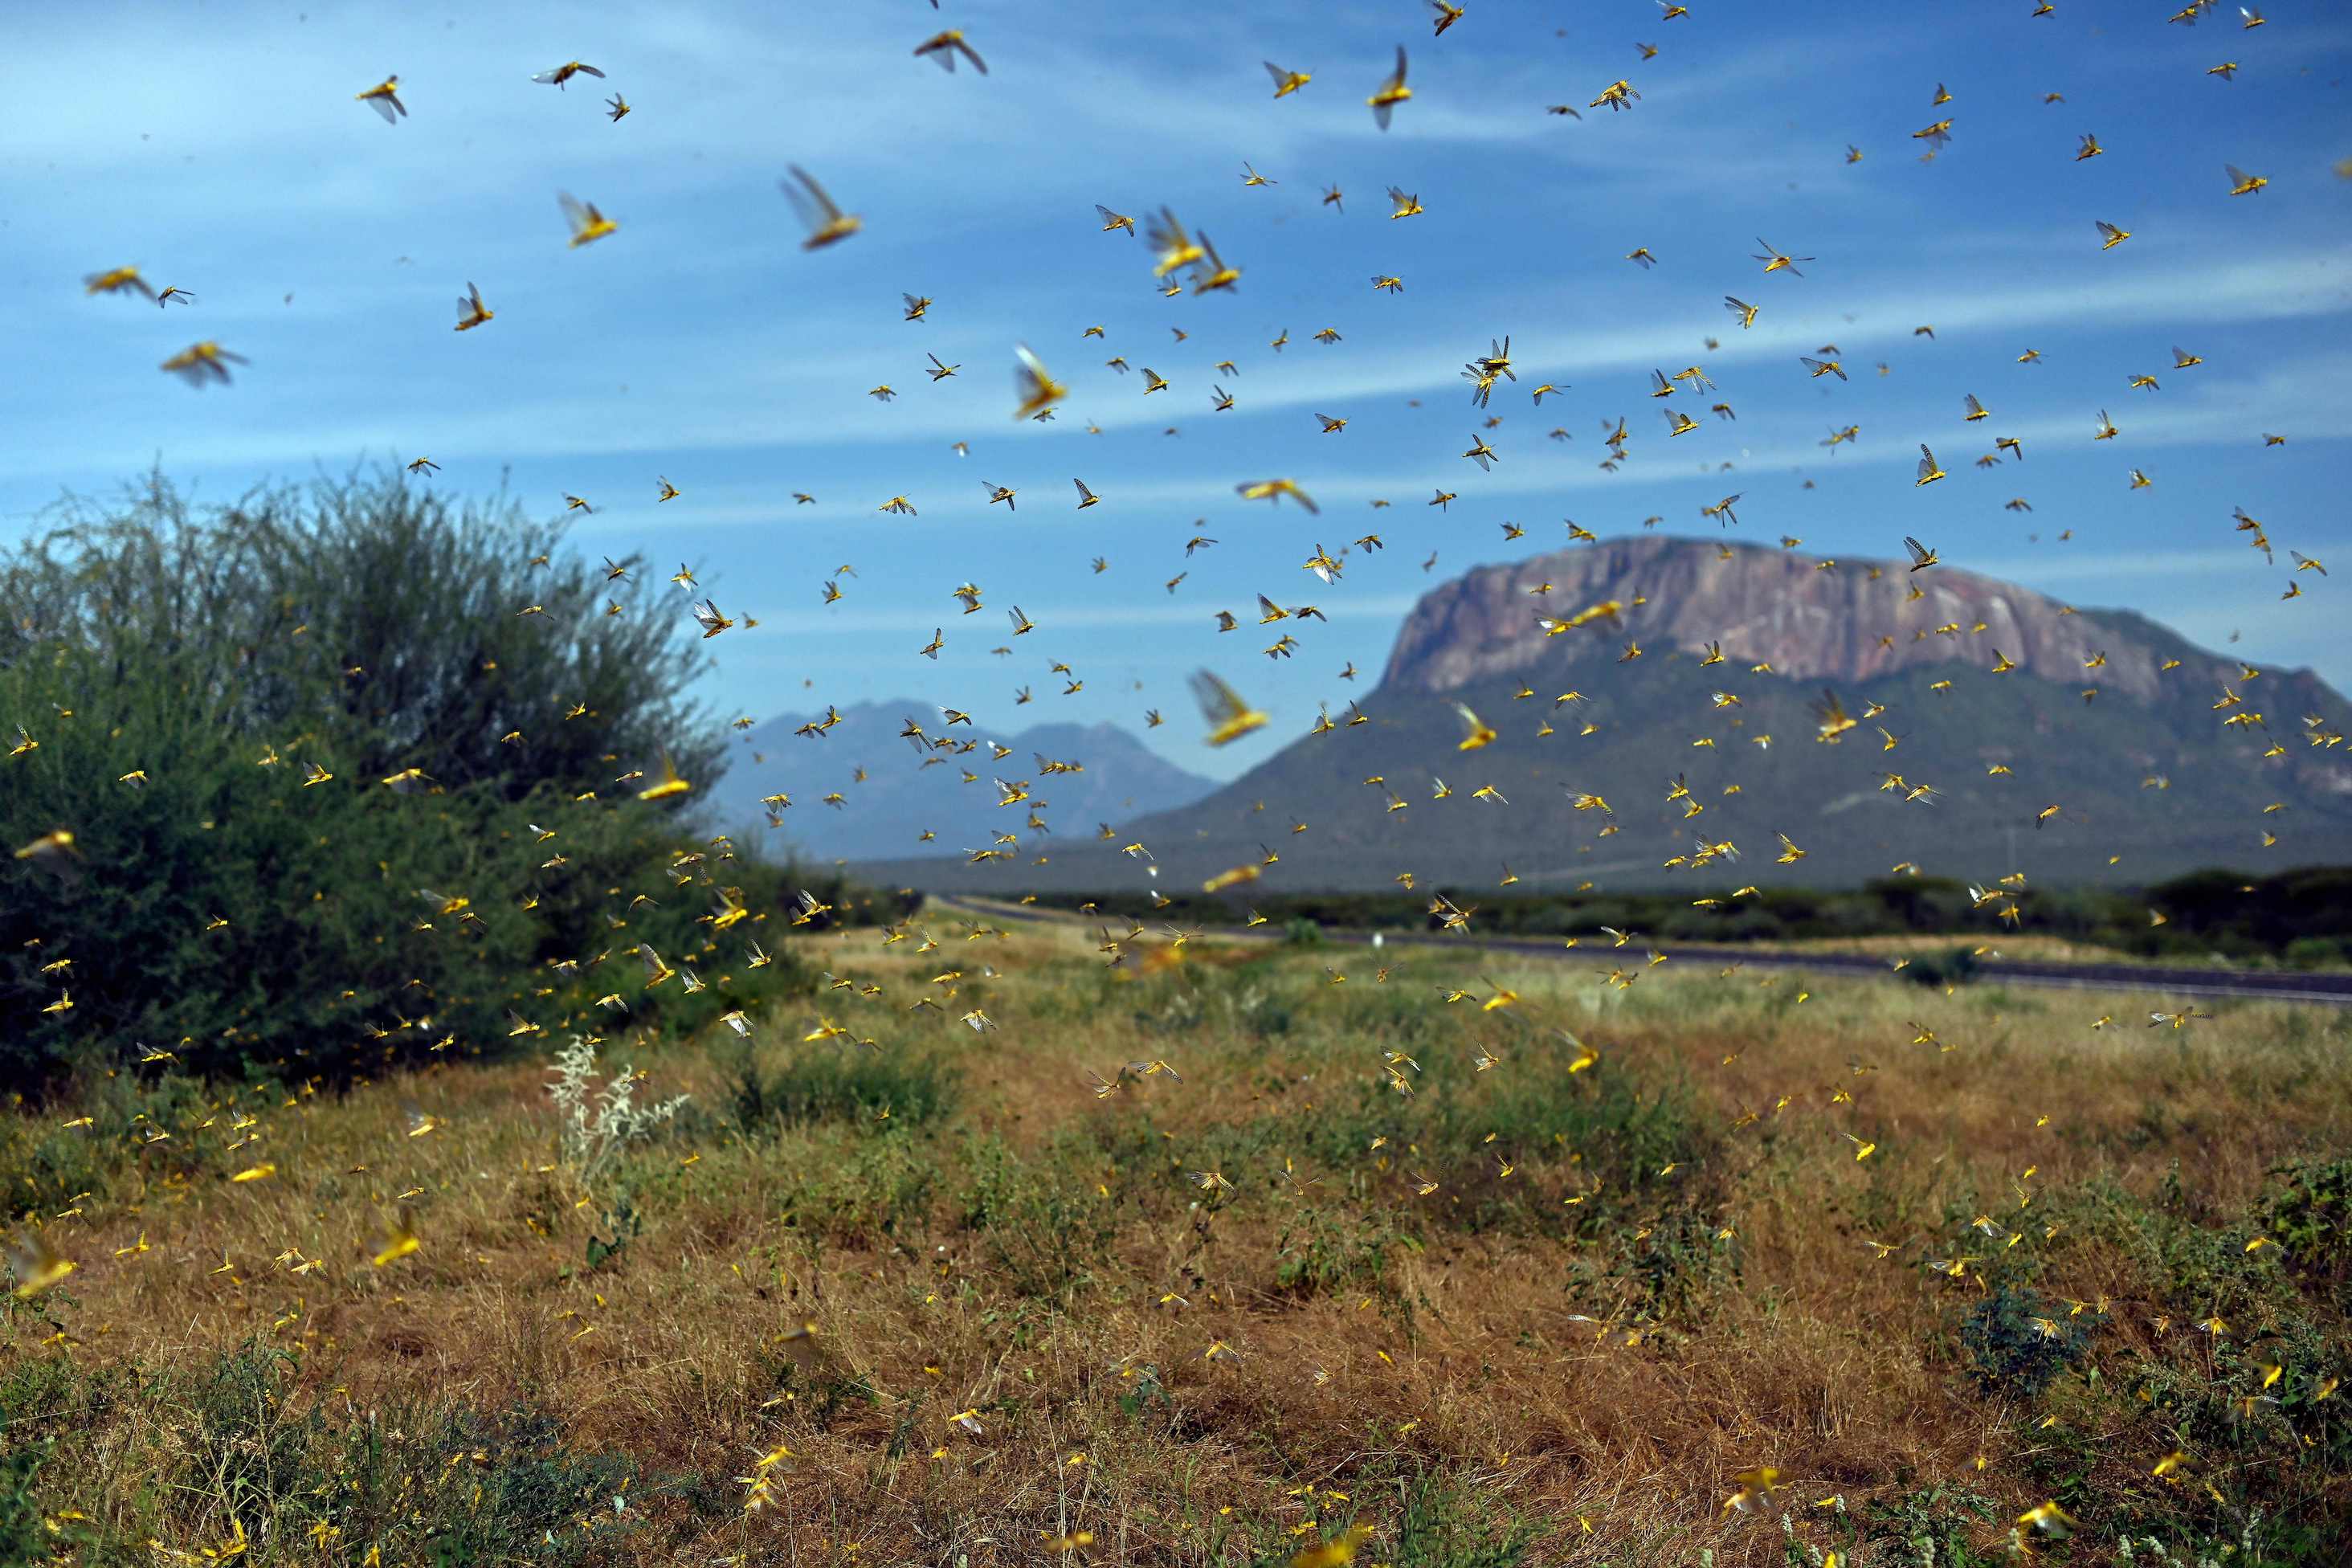 Image of locusts swarming in the Samburu area of Kenya